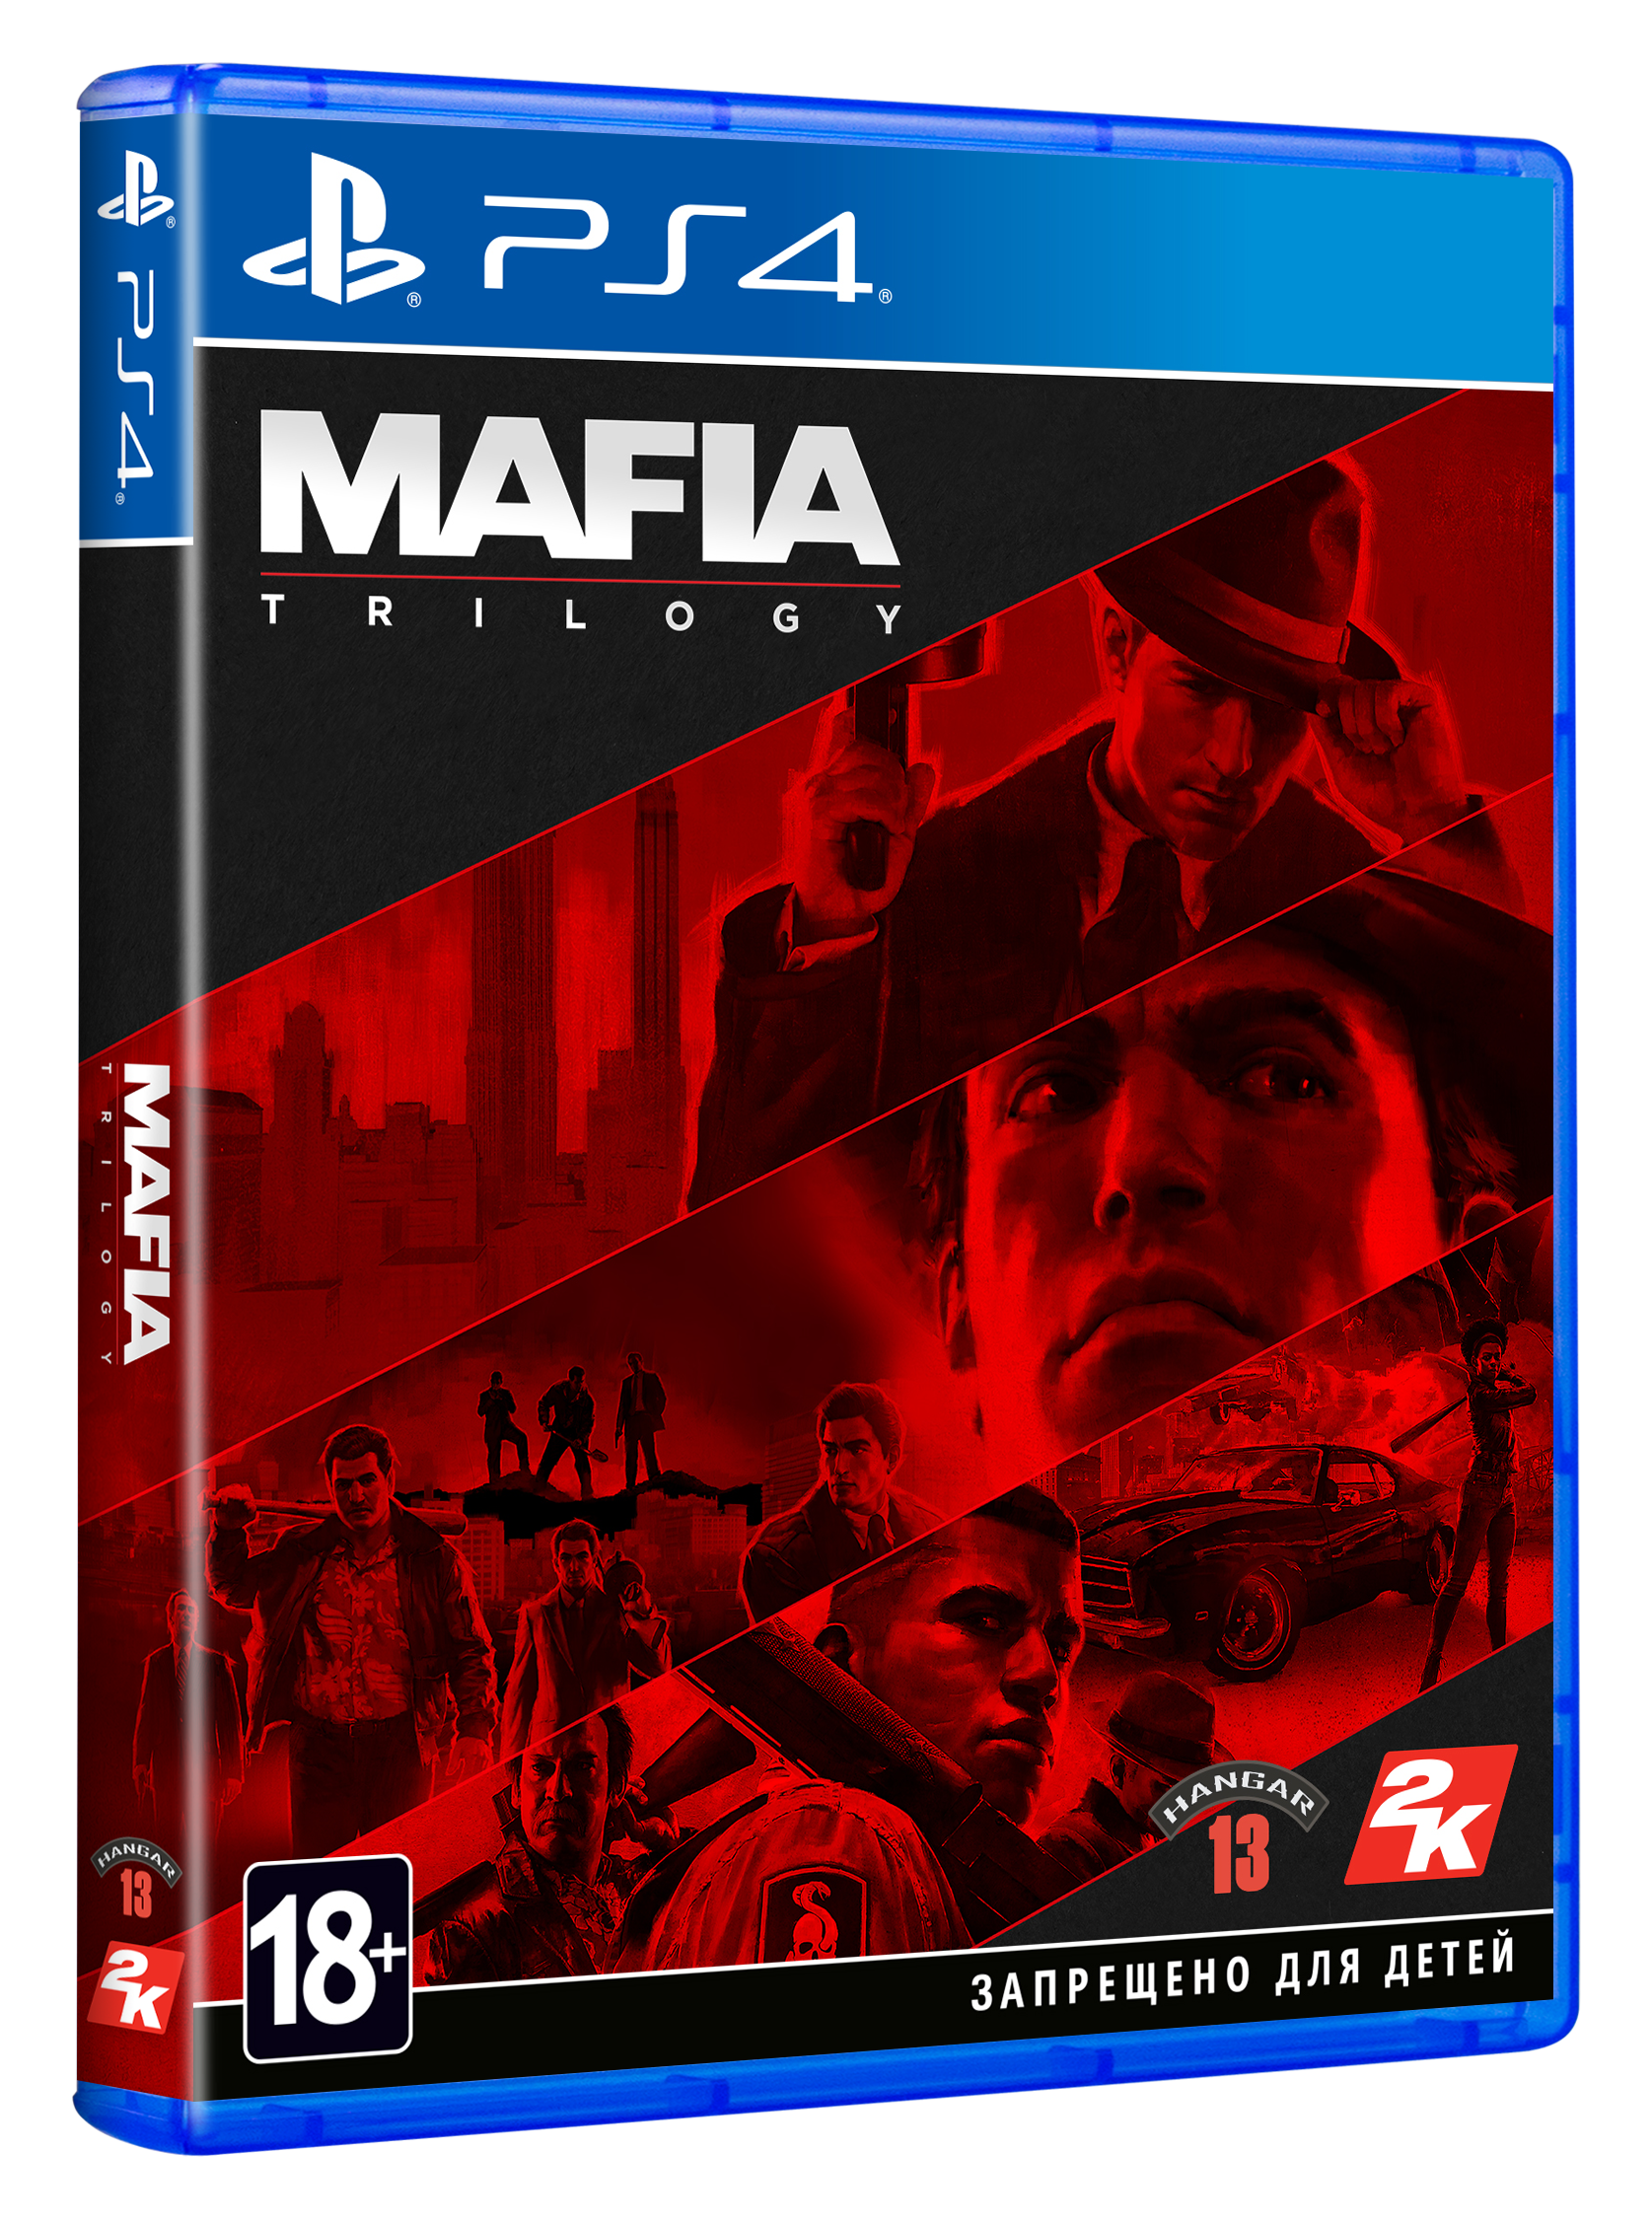 Диск ПС 4 Mafia Definitive. Мафия трилогия ps4 диск. Mafia III Sony ps4. Диск мафия 2 ПС 4.